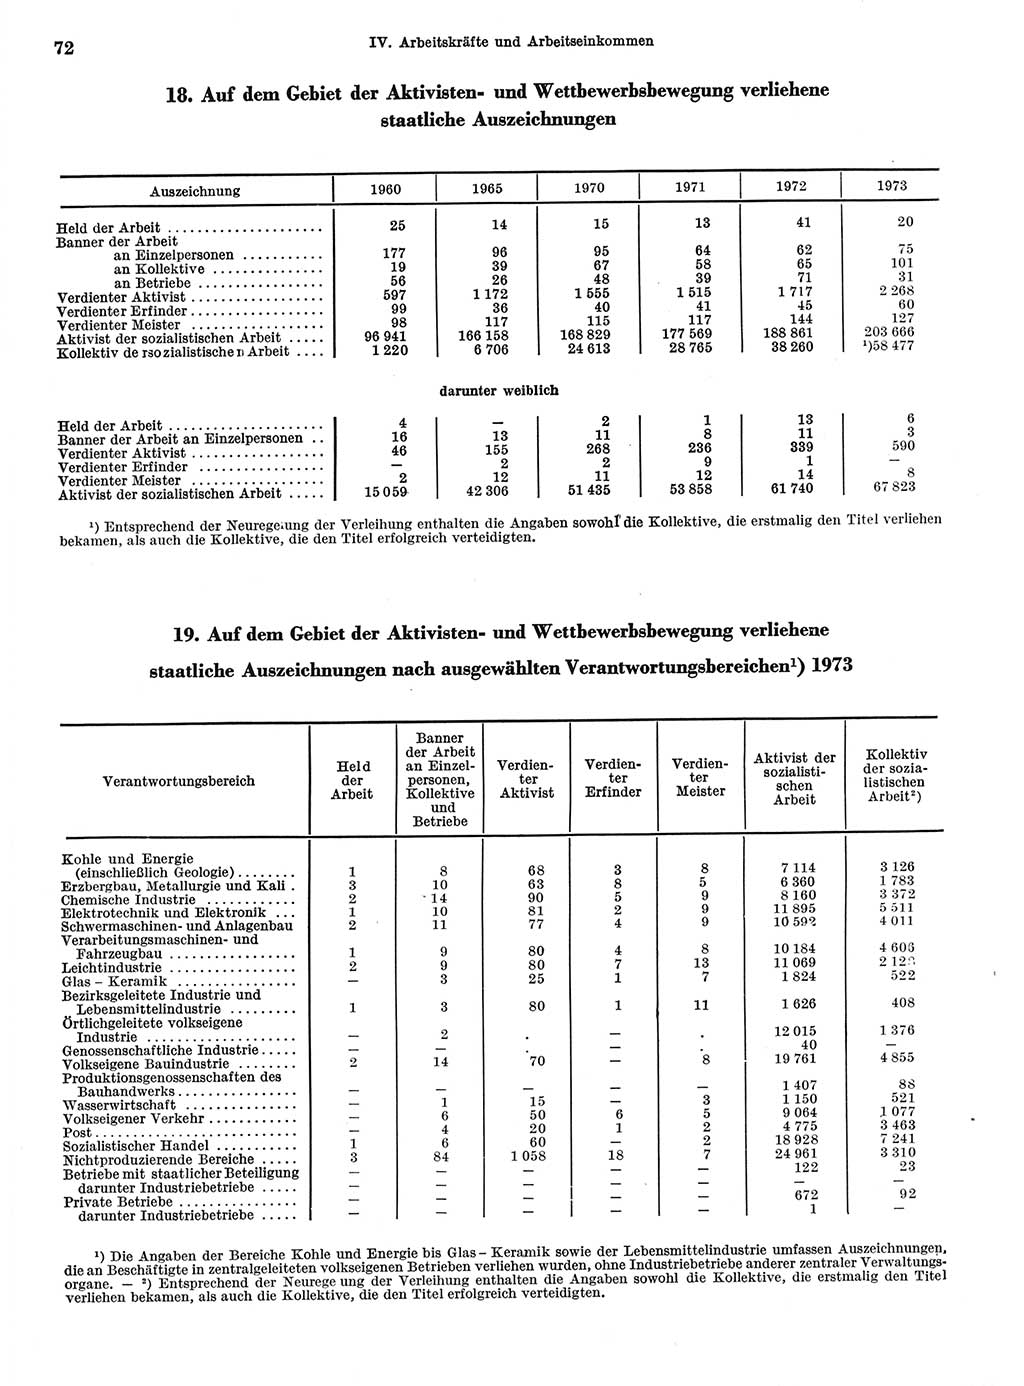 Statistisches Jahrbuch der Deutschen Demokratischen Republik (DDR) 1974, Seite 72 (Stat. Jb. DDR 1974, S. 72)